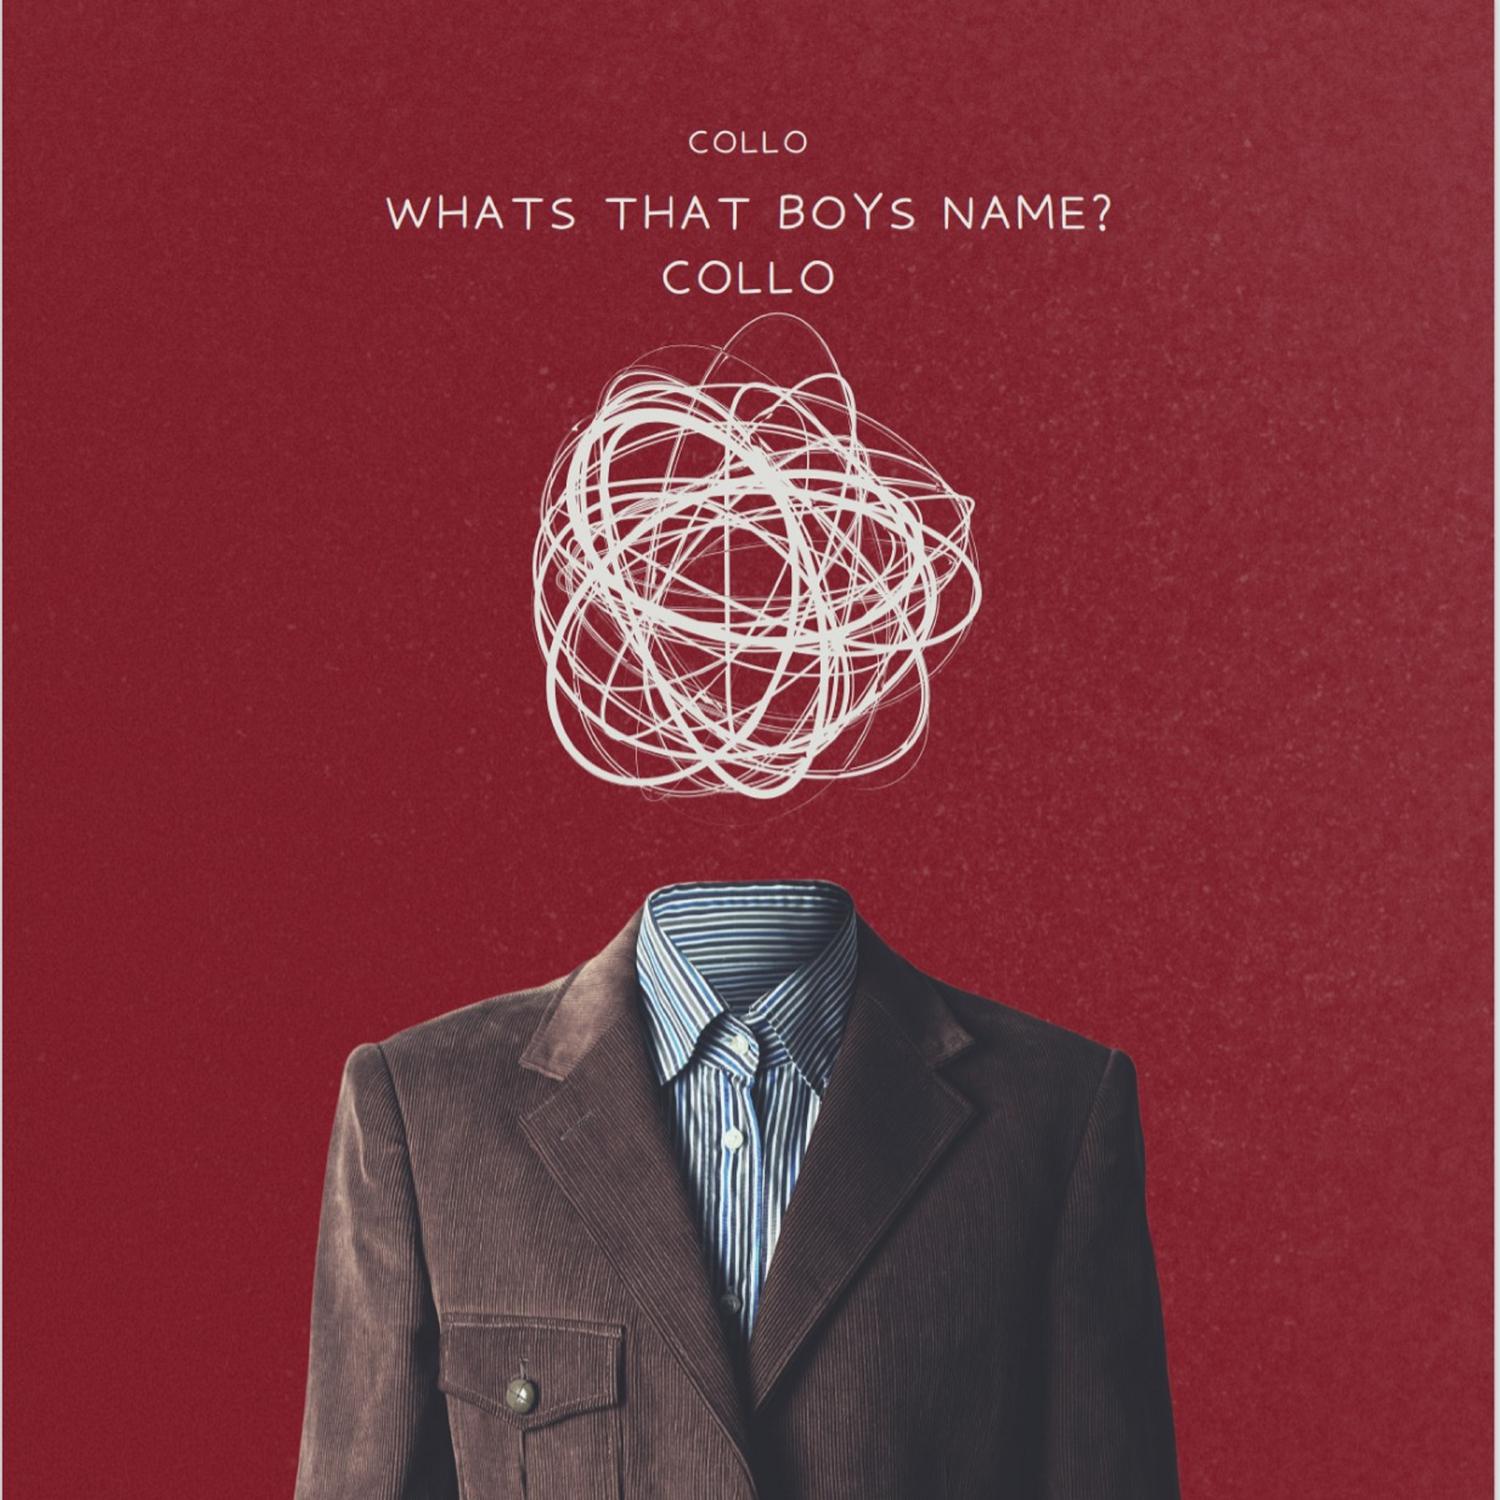 Collo - COLLO! (What's That Boy's Name?)